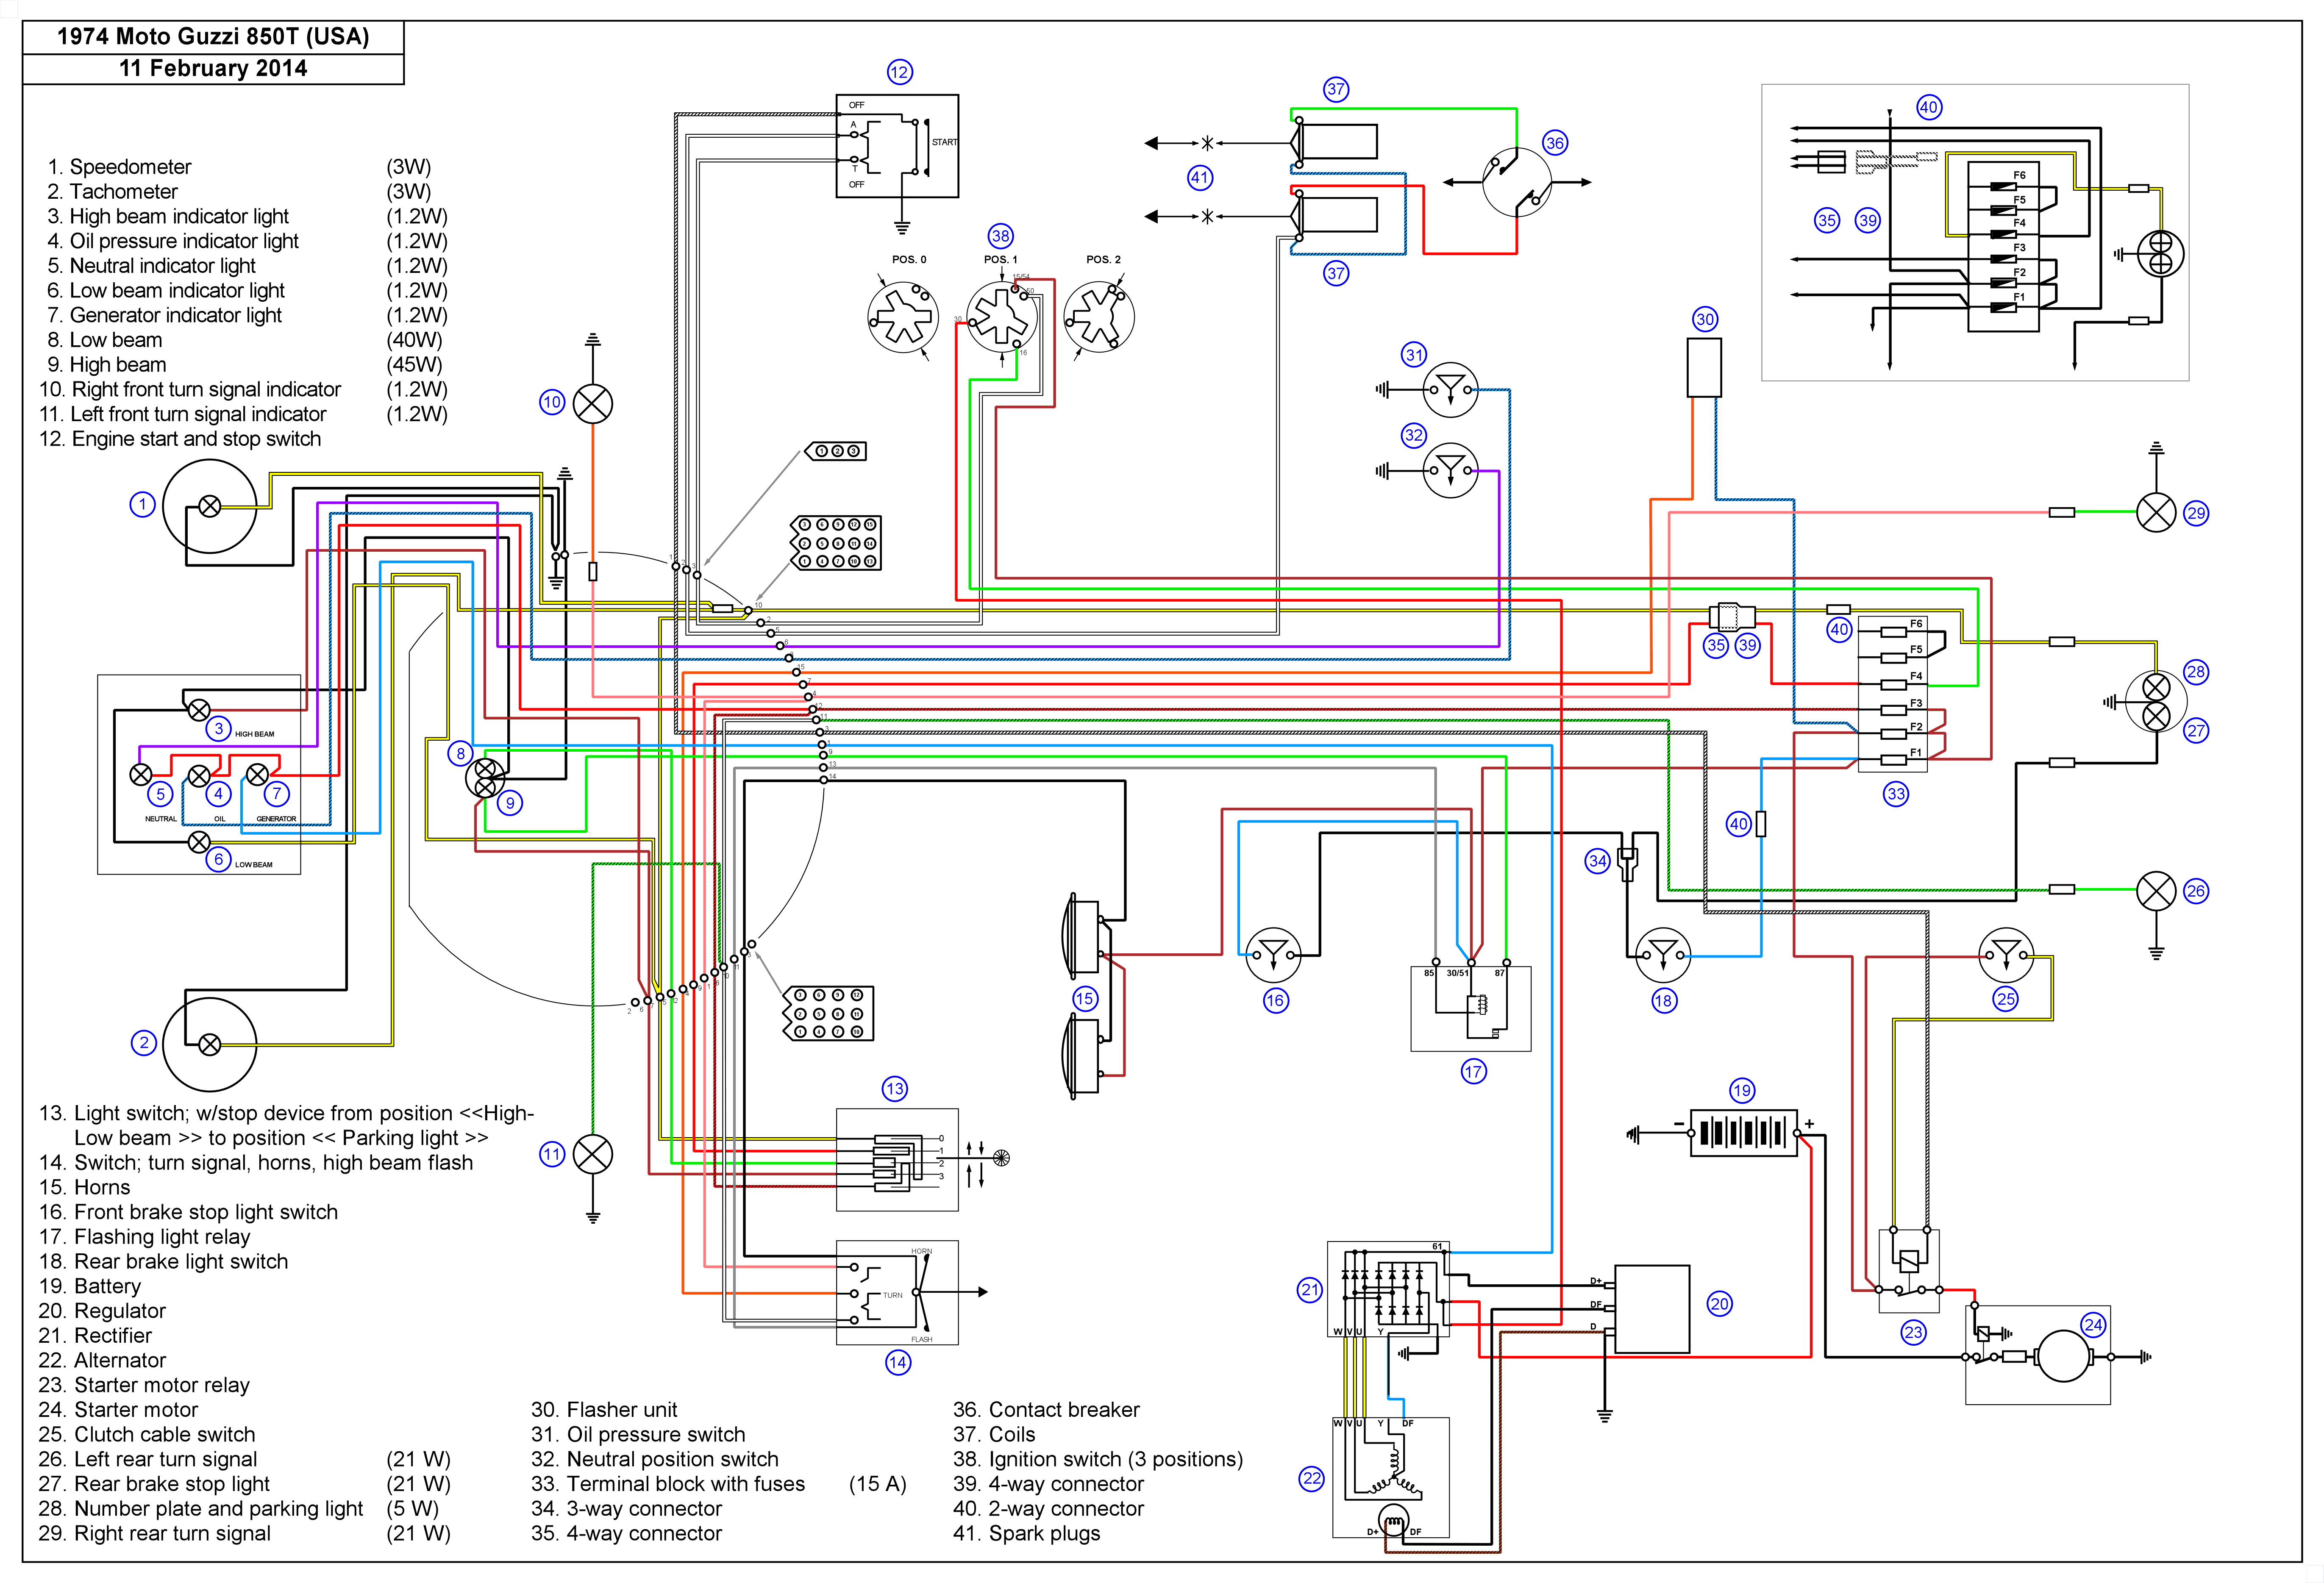 Wiring Manual PDF: 11 1v Wiring Diagram